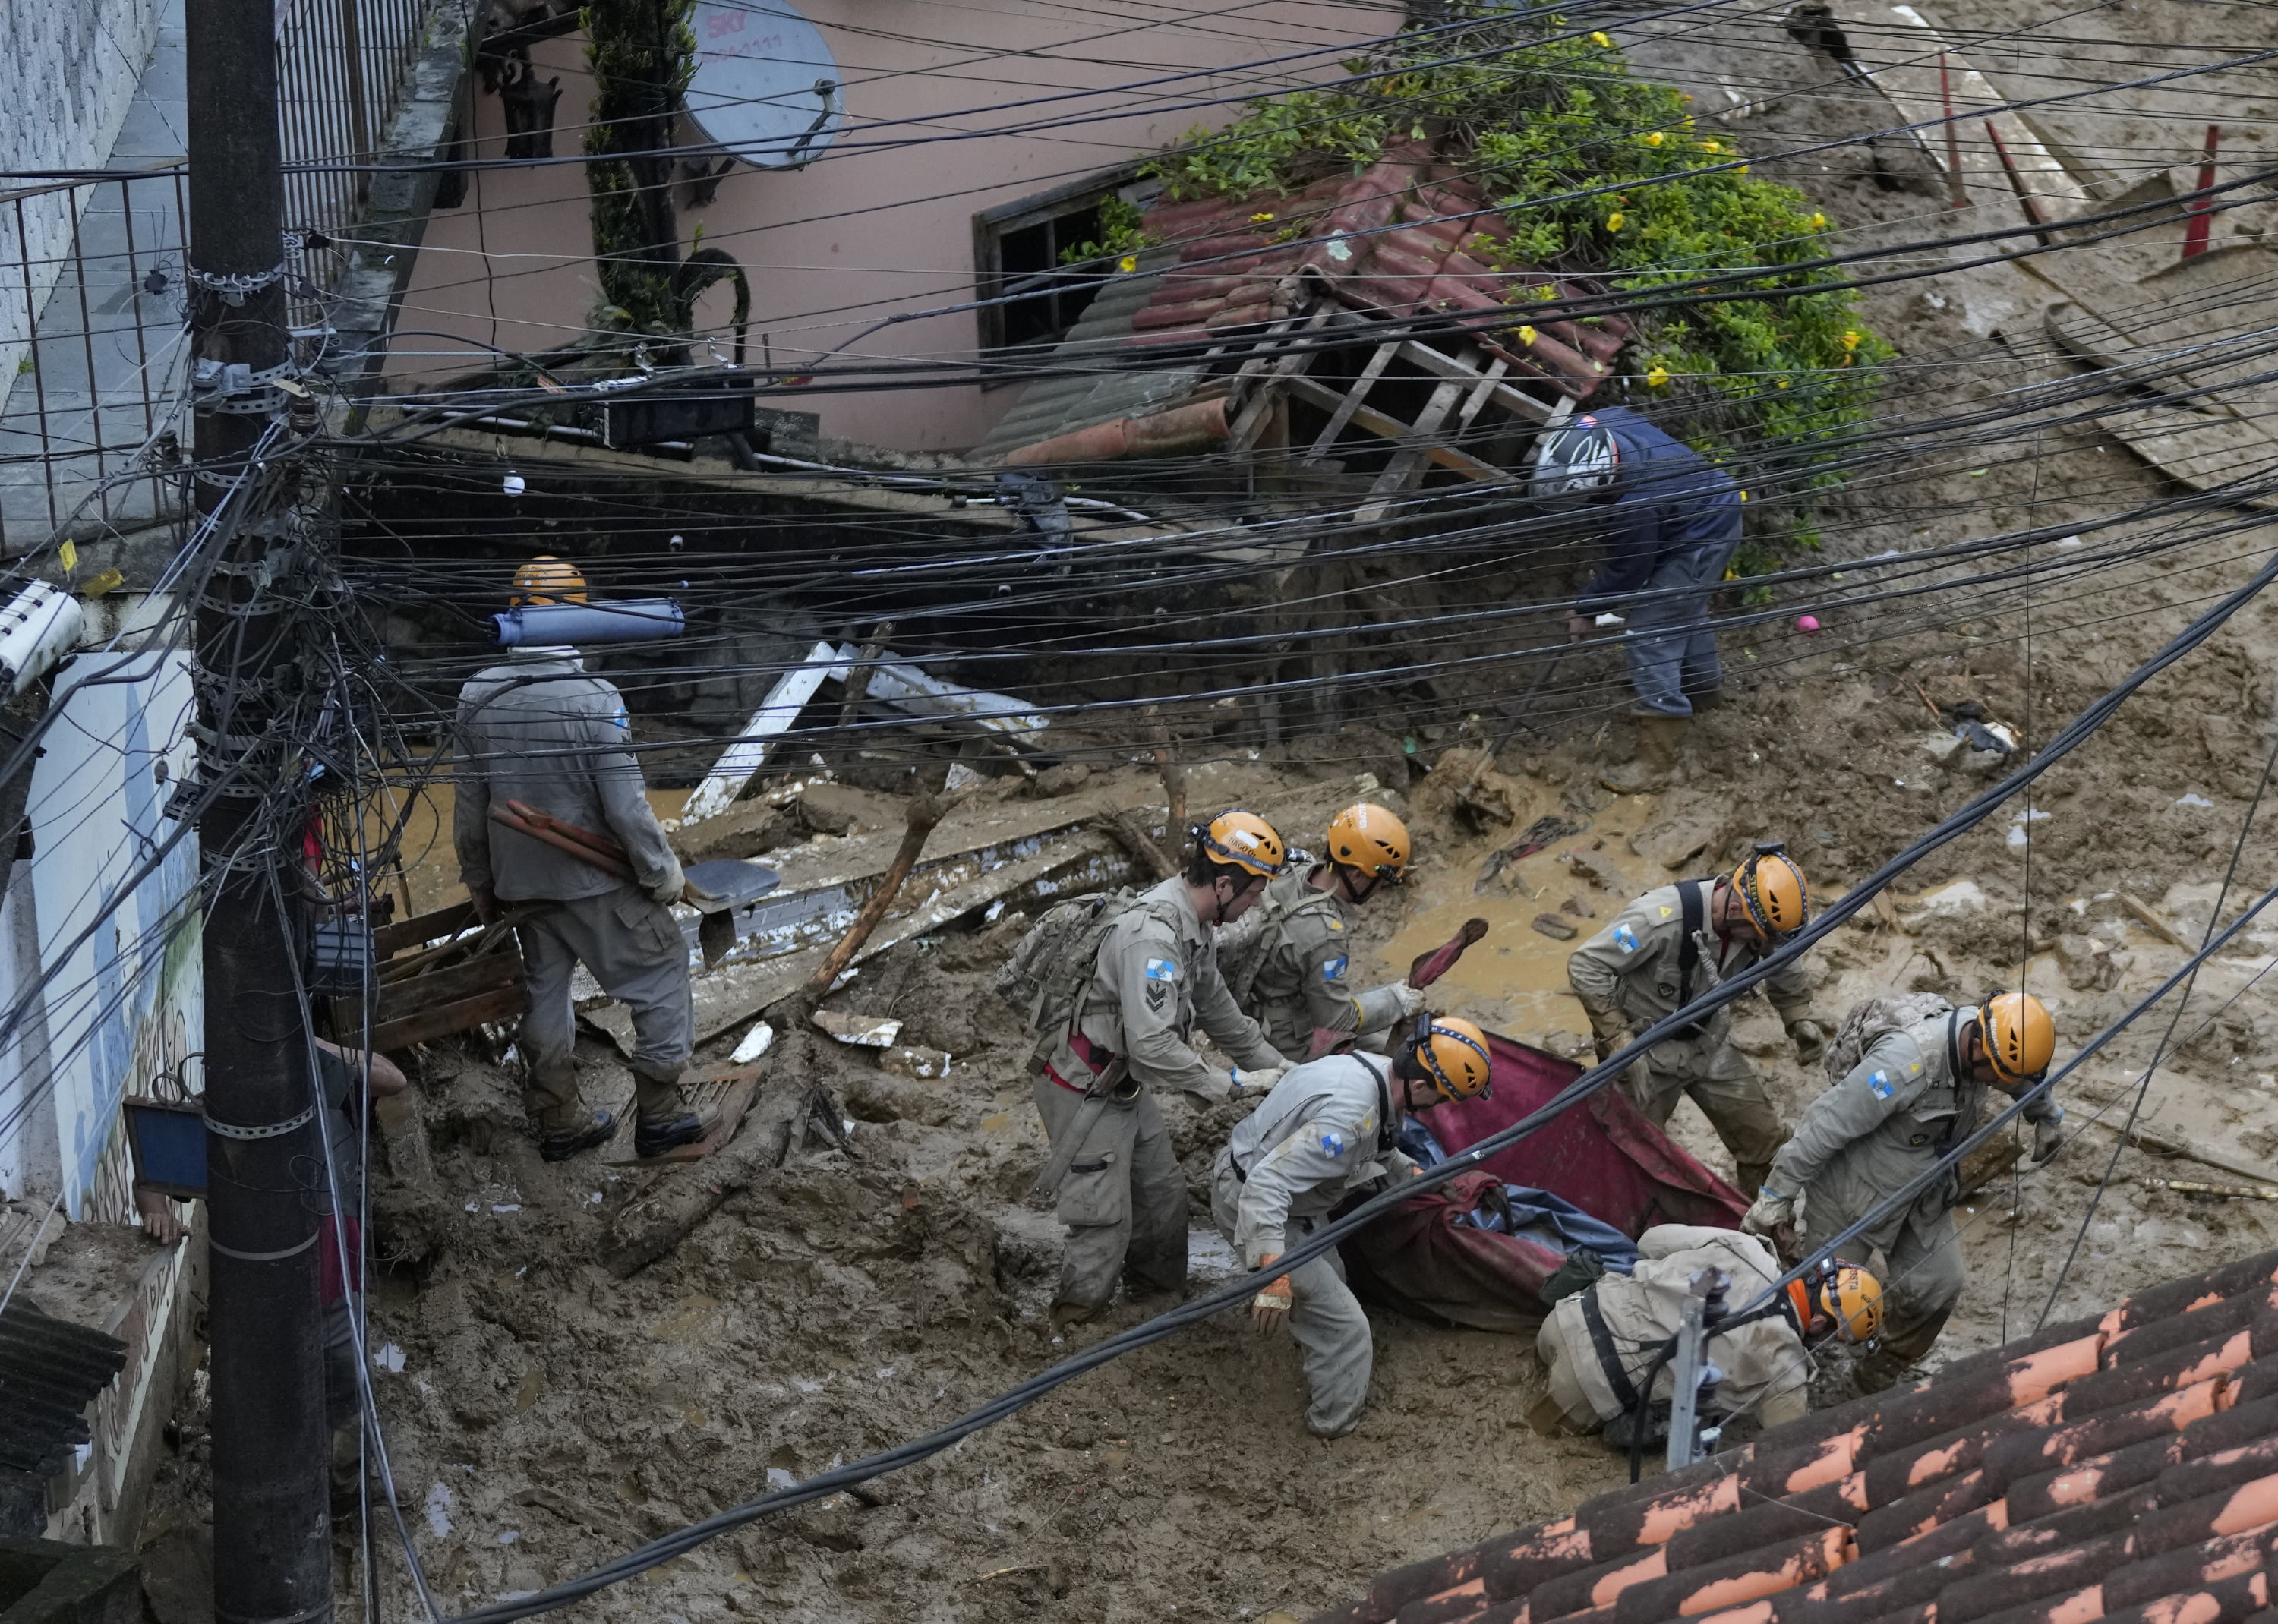 A landslide victim in Petropolis, Brazil